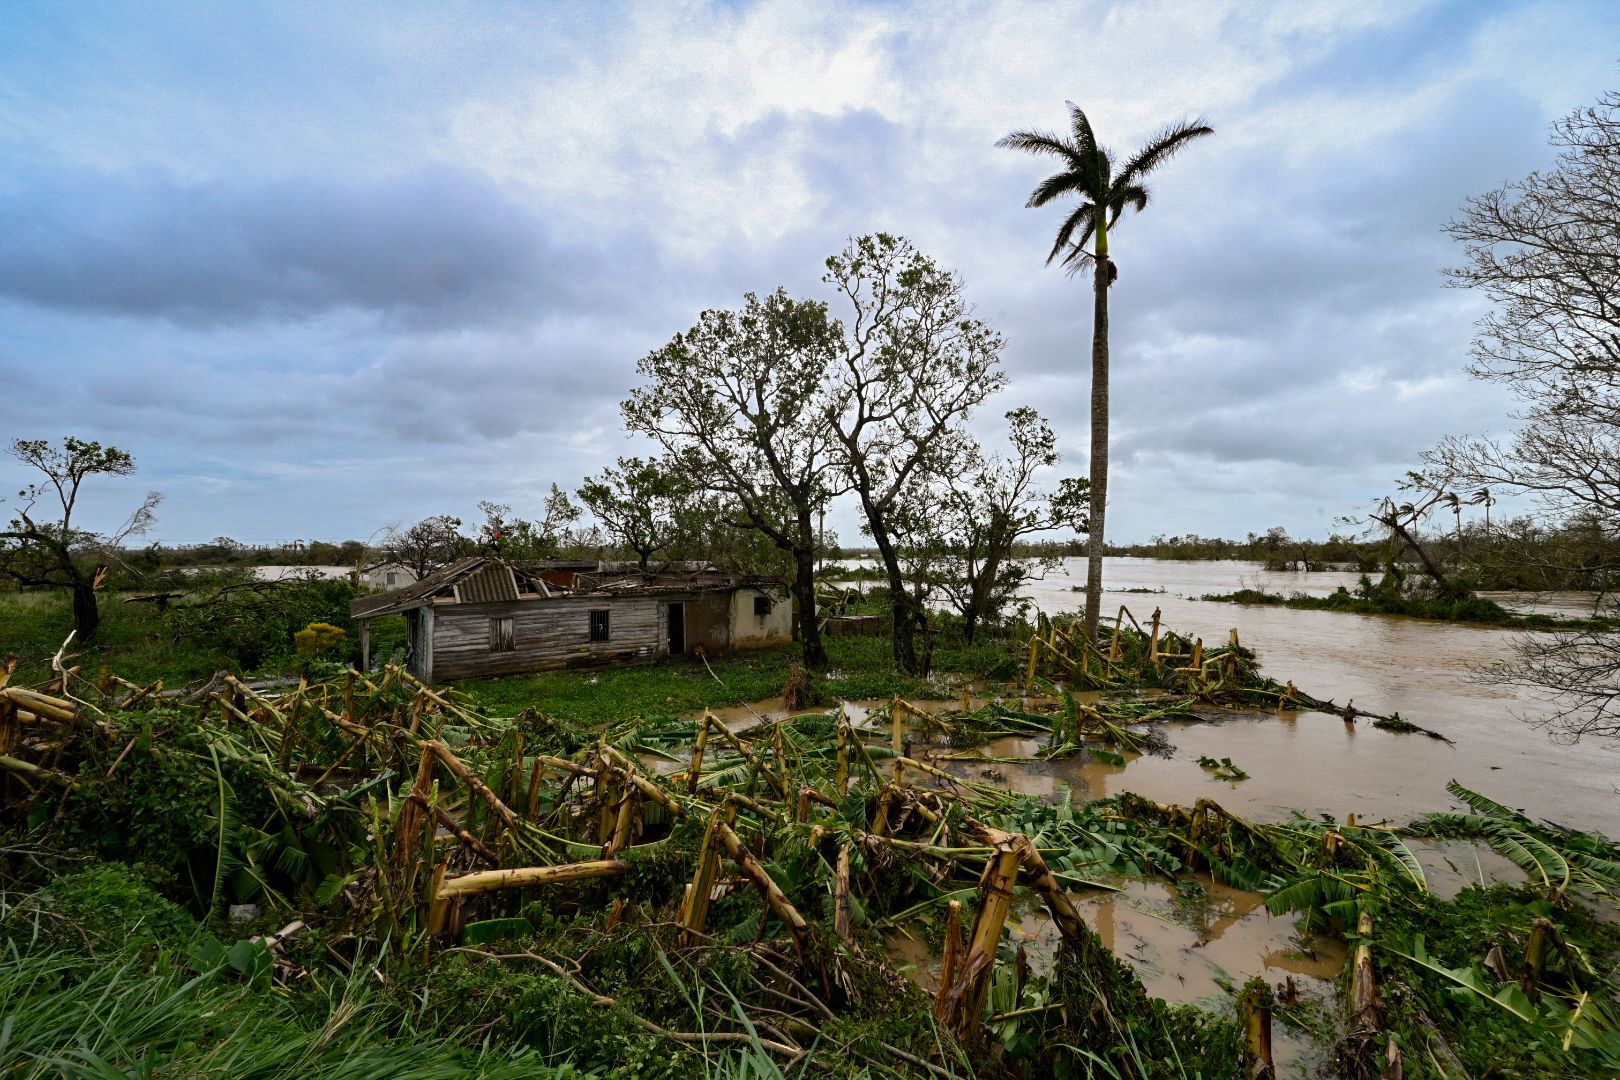 Se ve una casa dañada en San Juan y Martínez, provincia de Pinar del Río, Cuba tras el paso del huracán Ian, el 27 de septiembre de 2022. (Foto de ADALBERTO ROQUE / AFP)